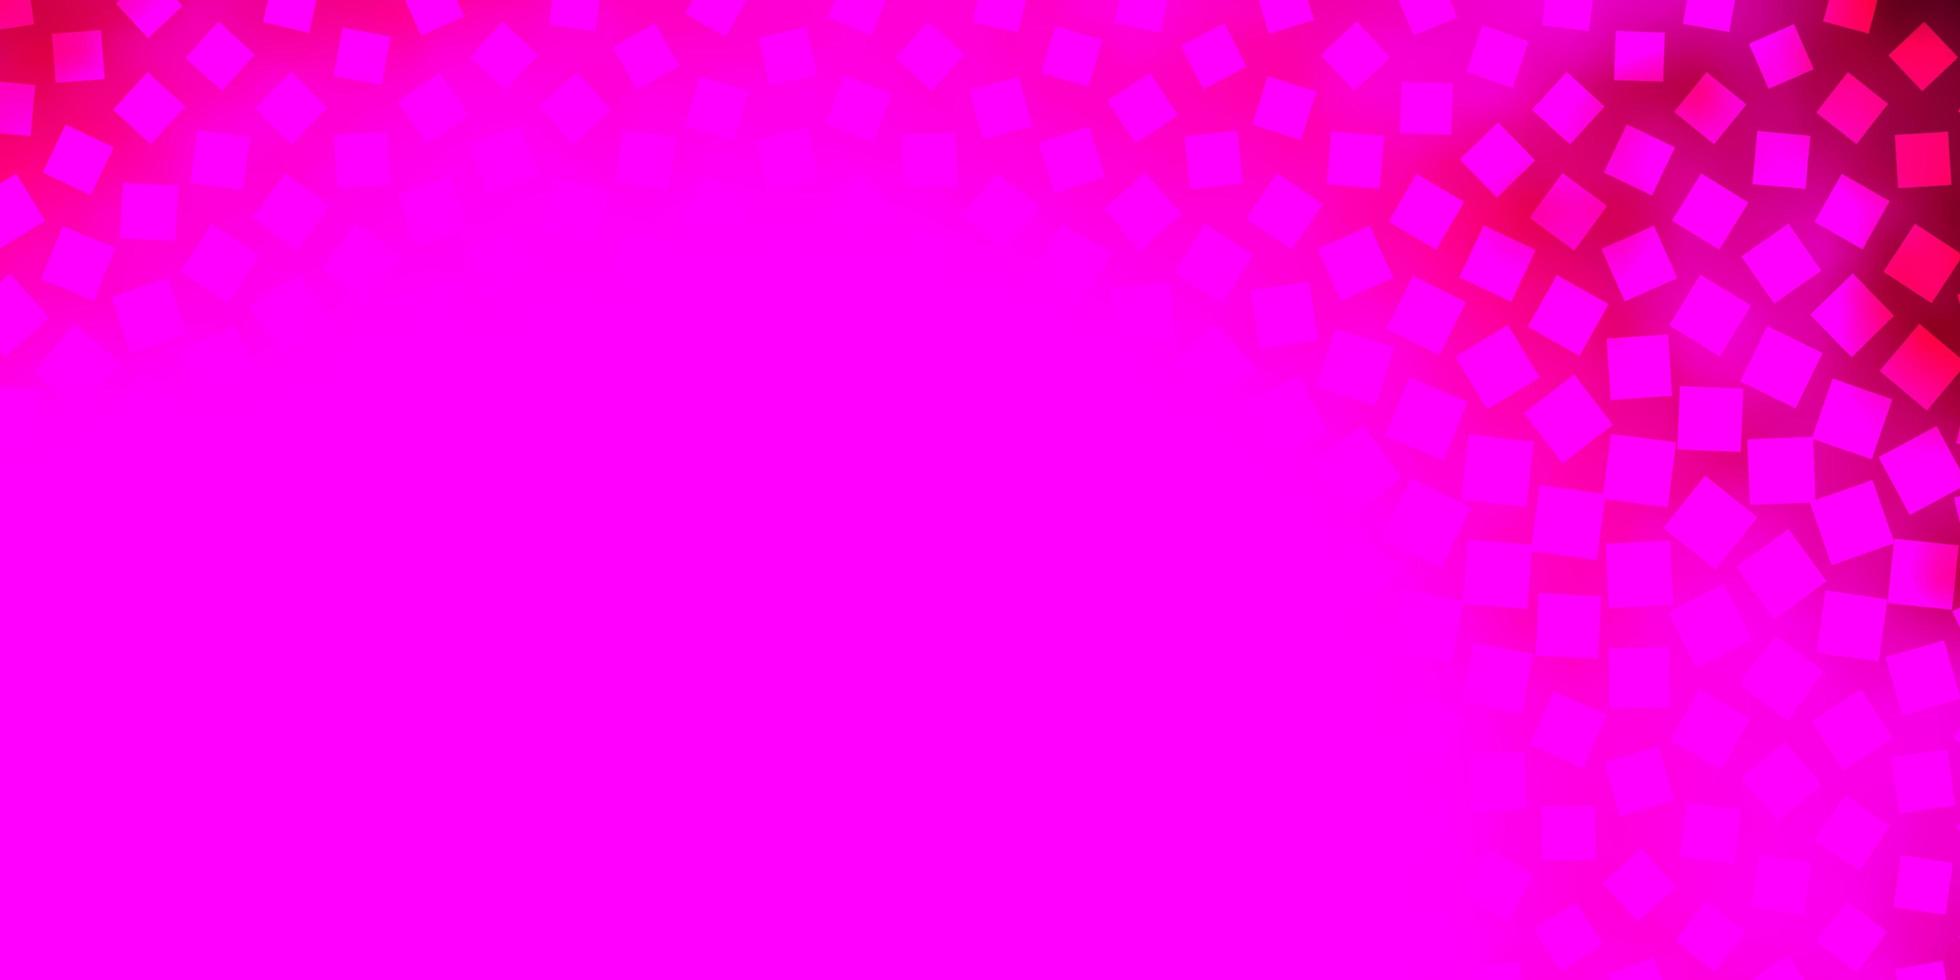 Fondo de vector rosa claro con rectángulos.